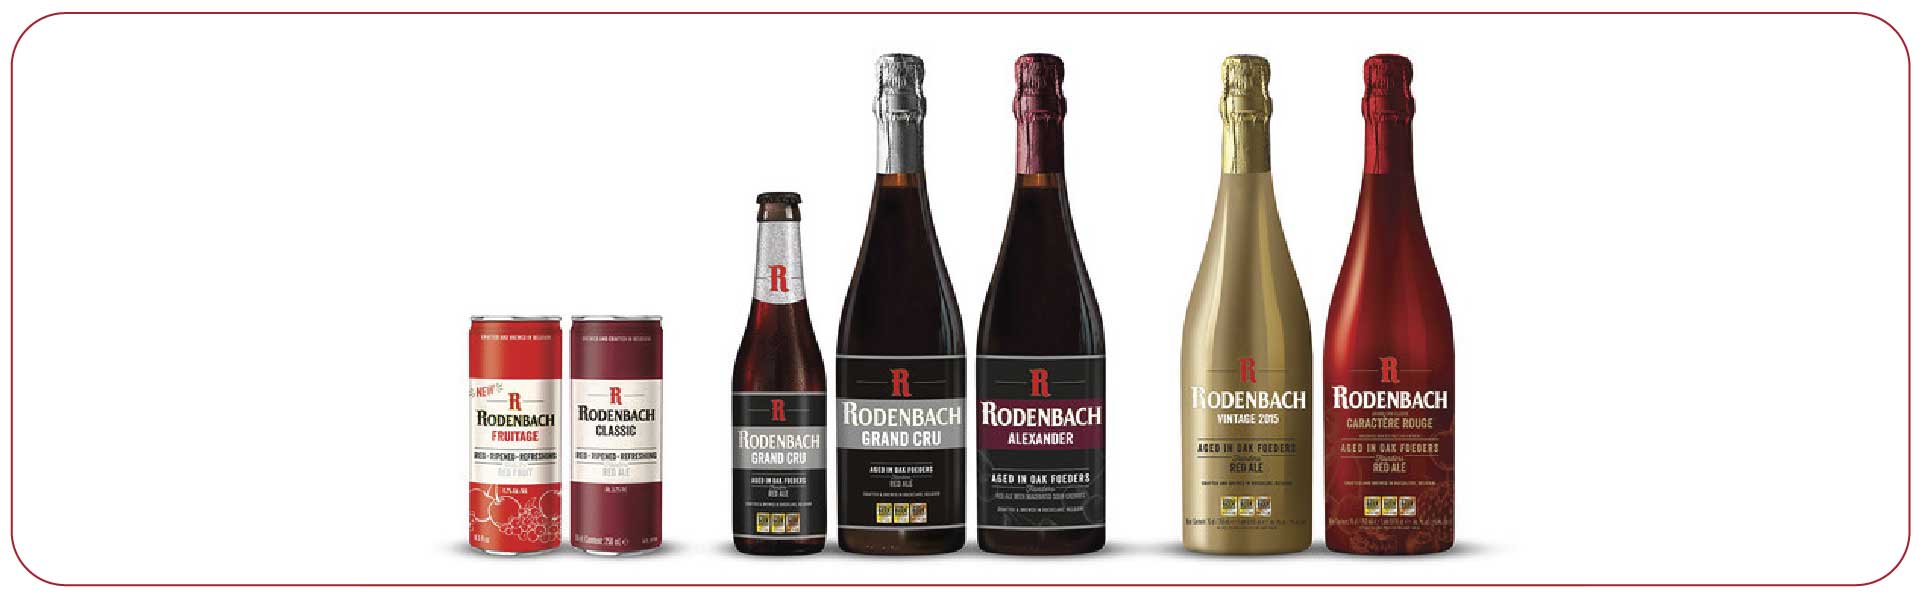 Brewery Rodenbach